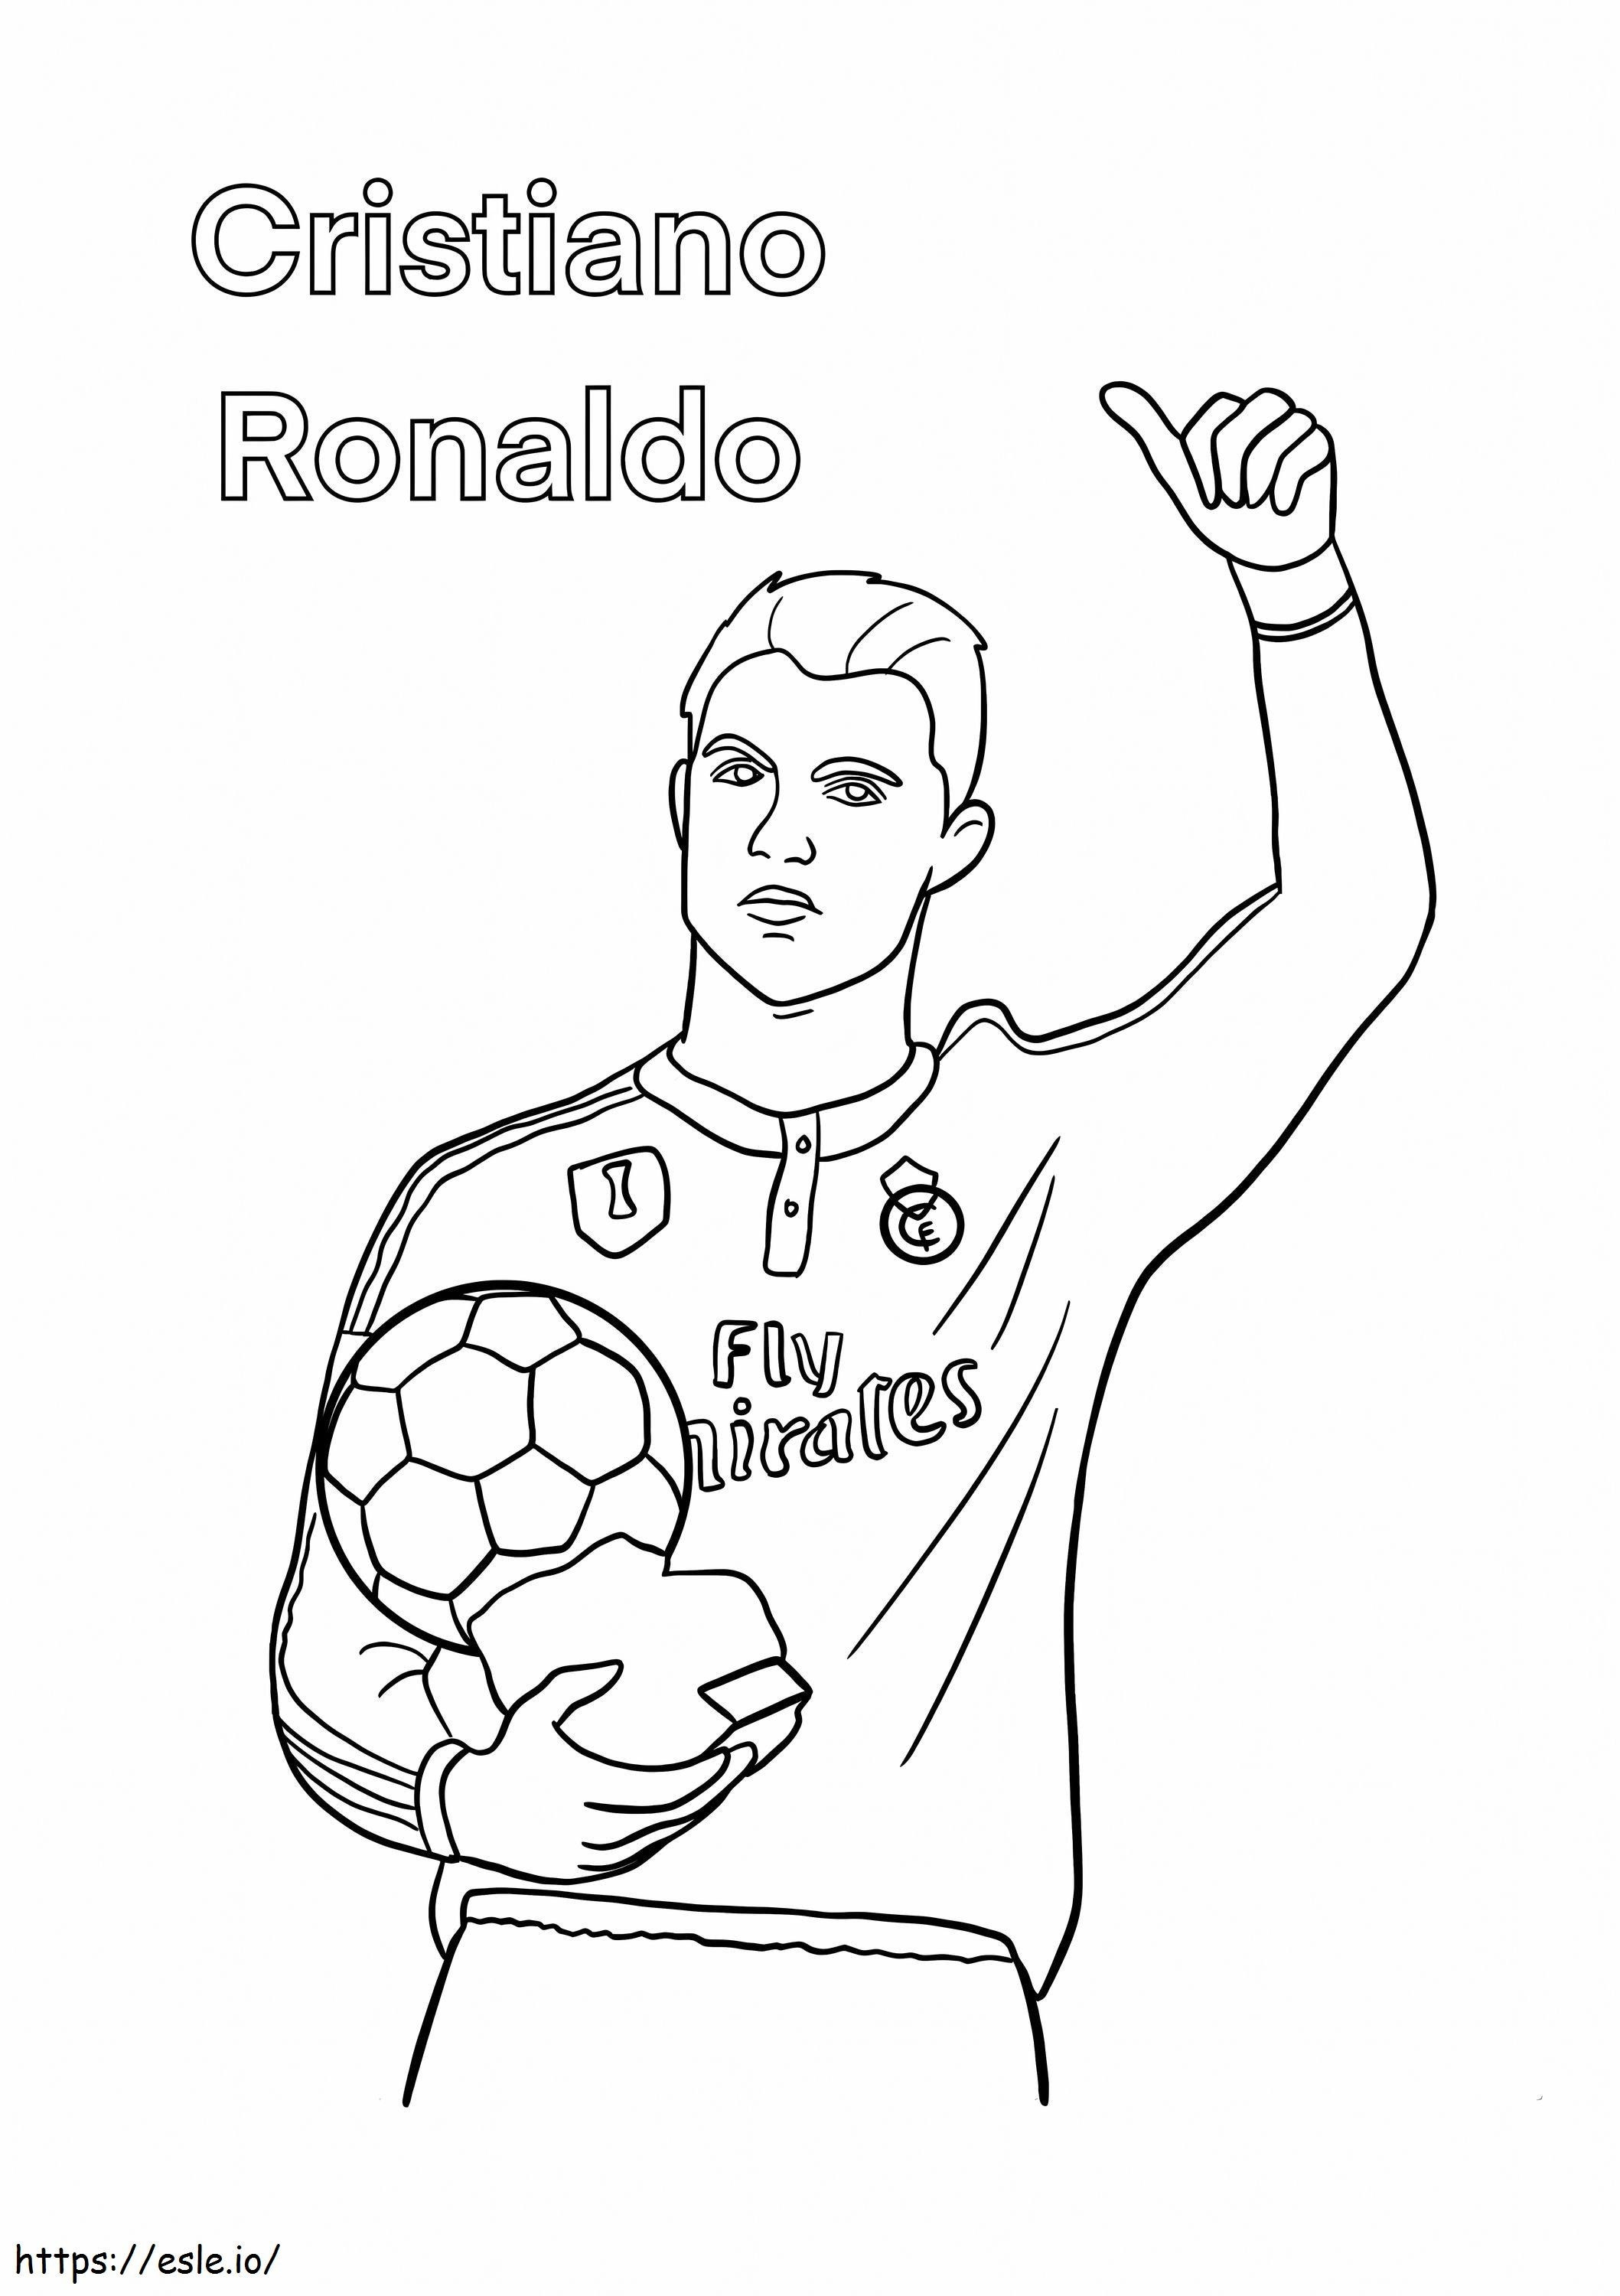 Cristiano Ronaldo gibi boyama